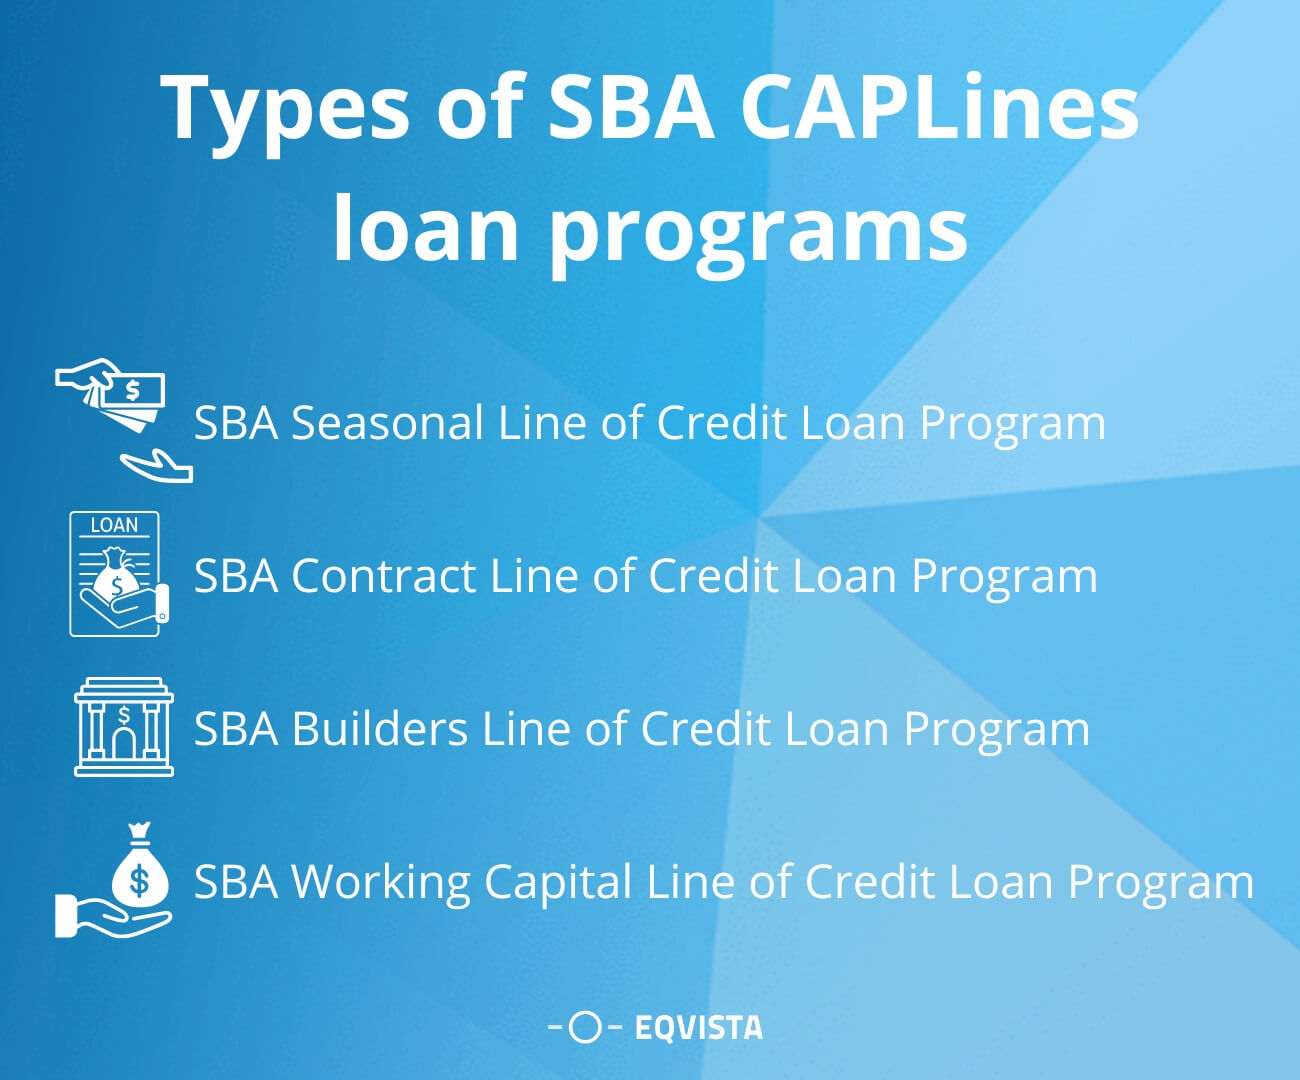 SBA loan programs